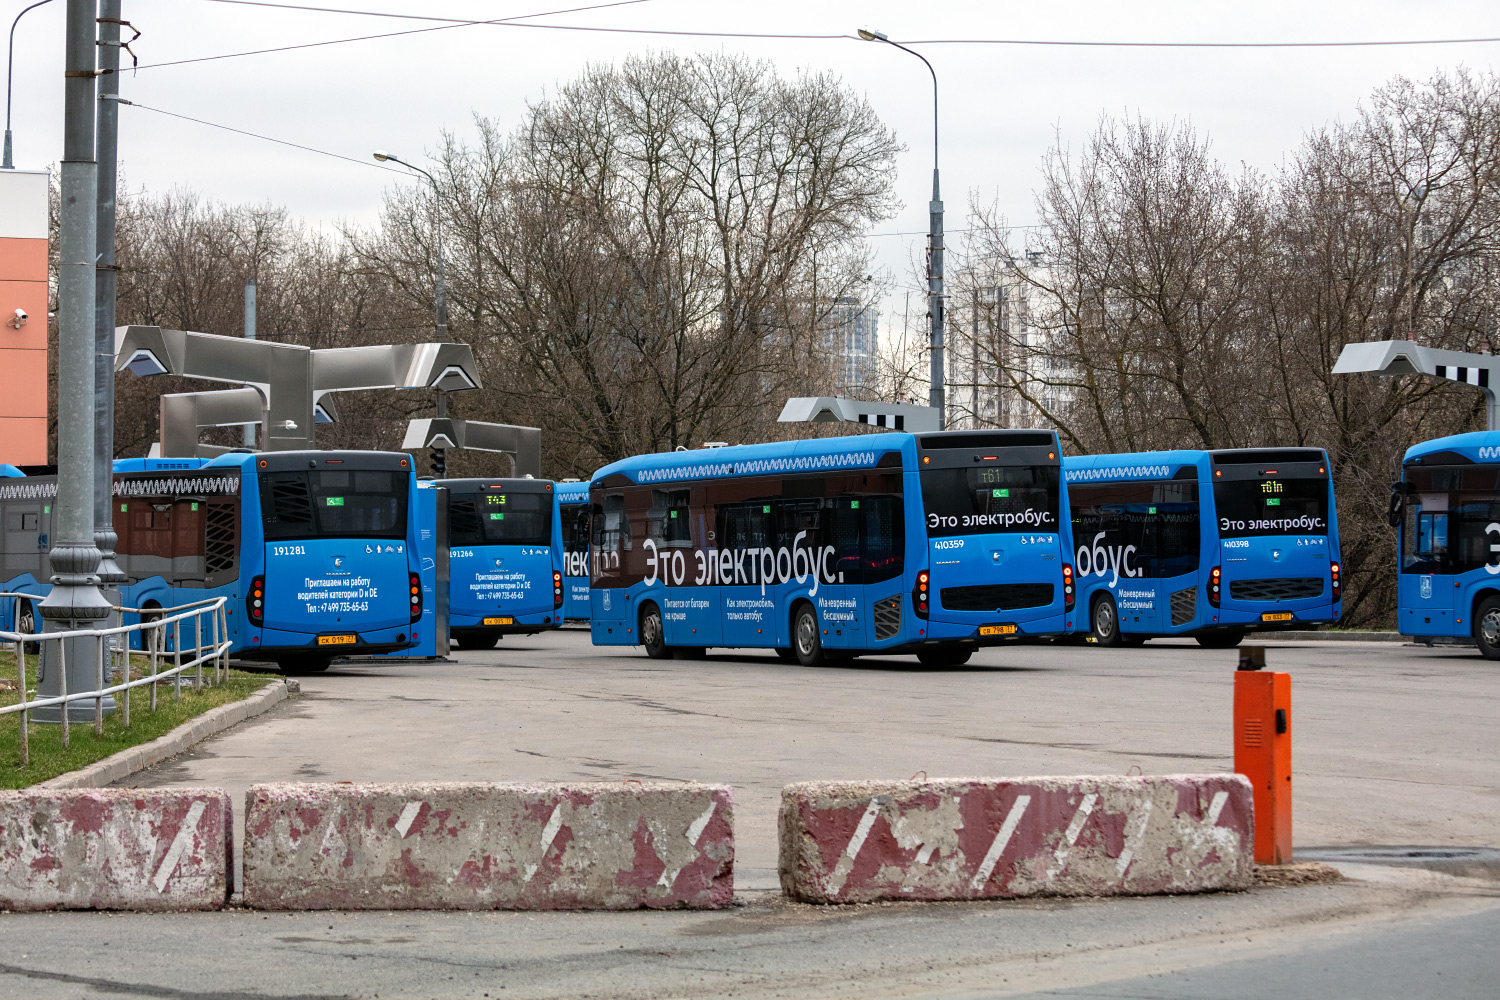 Μόσχα, KAMAZ-6282 # 410359; Μόσχα — Bus stations